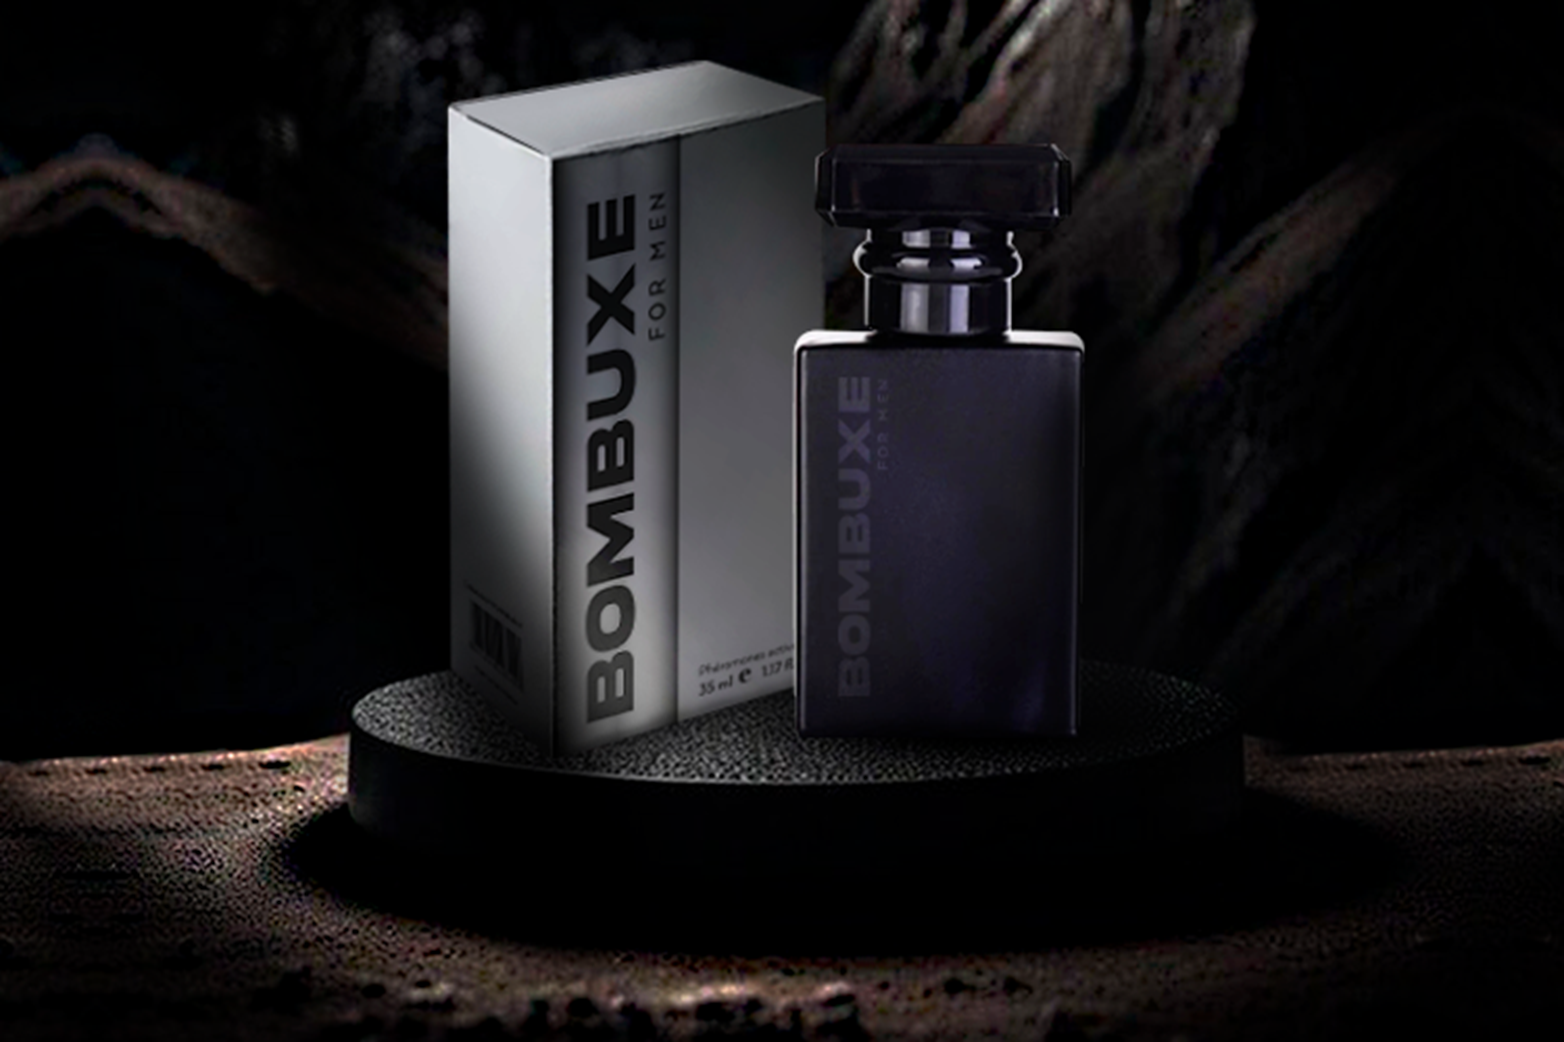 Bombuxe For Men: El Perfume con Feromonas que Revoluciona el Mercado